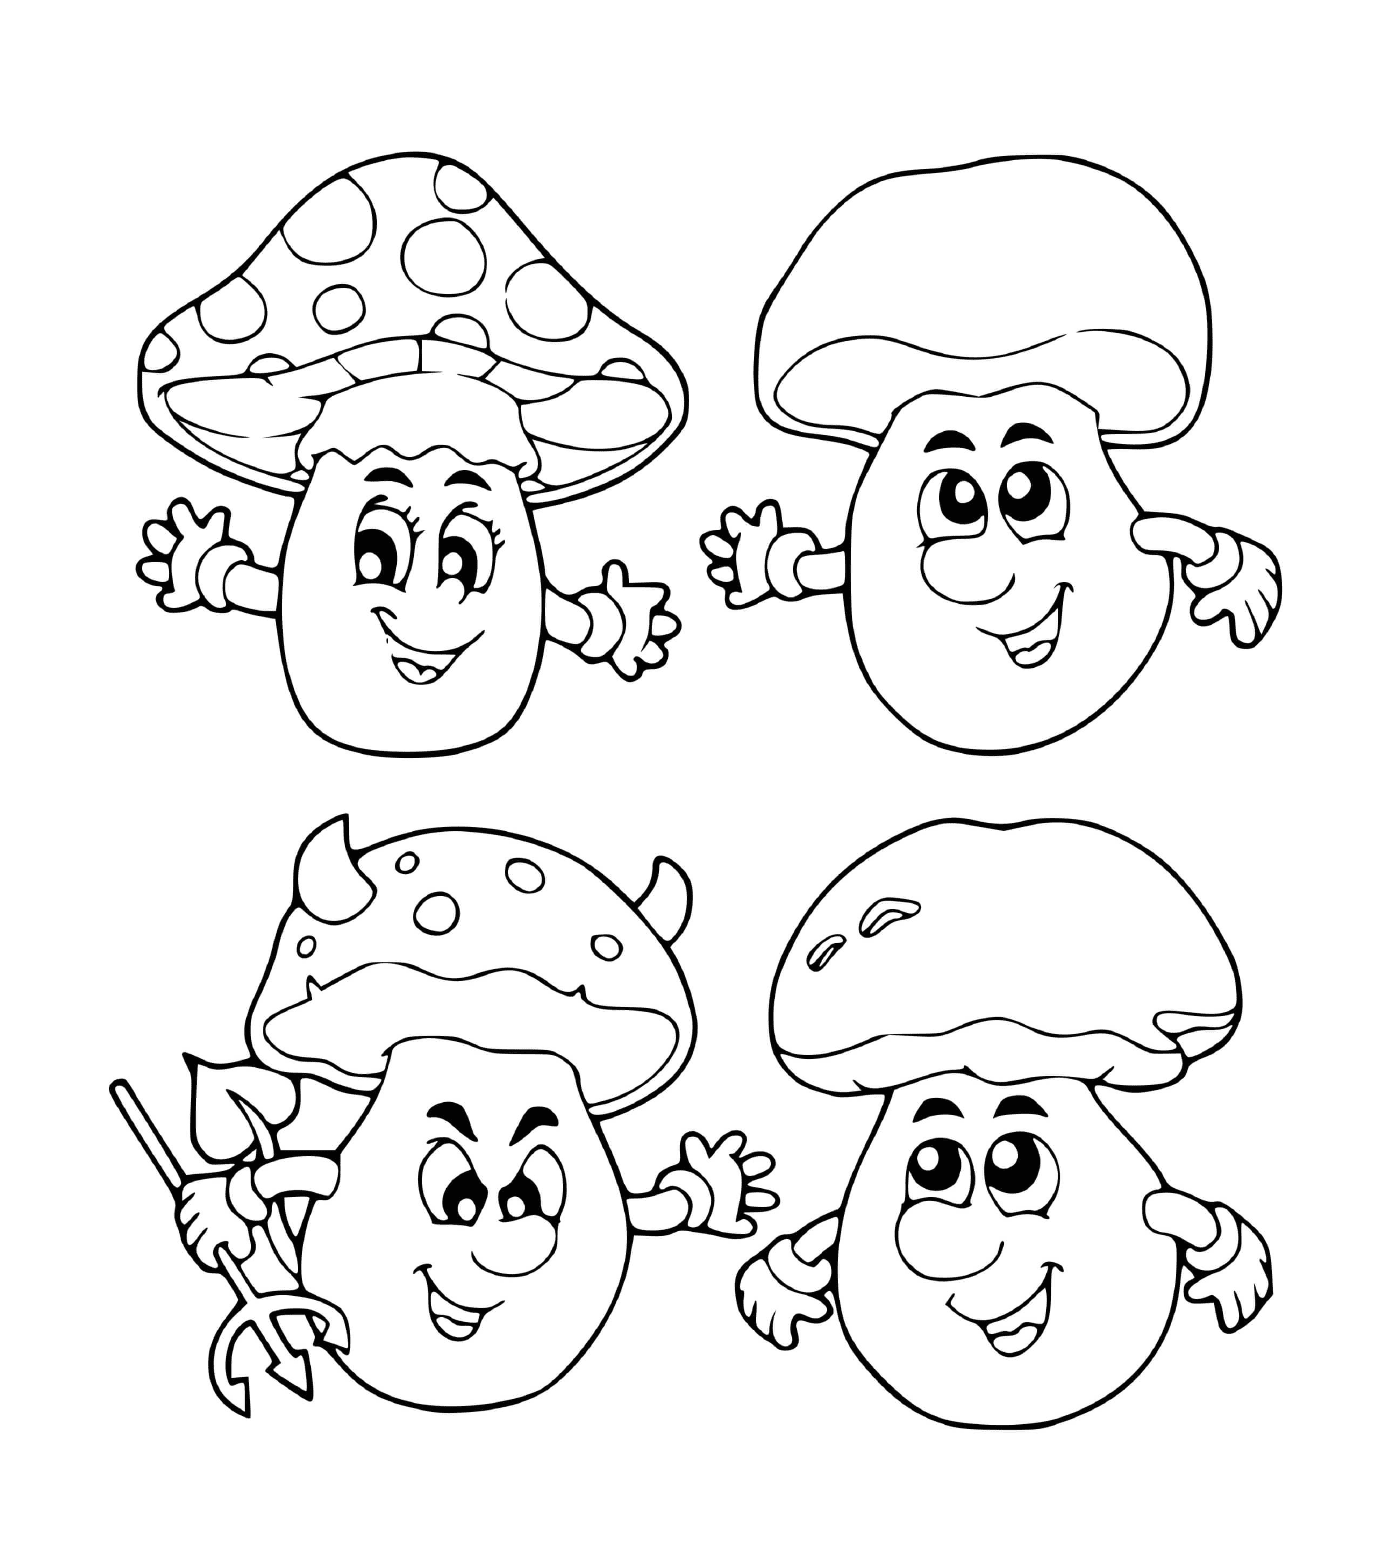  Vier schwarz-weiße Pilze 